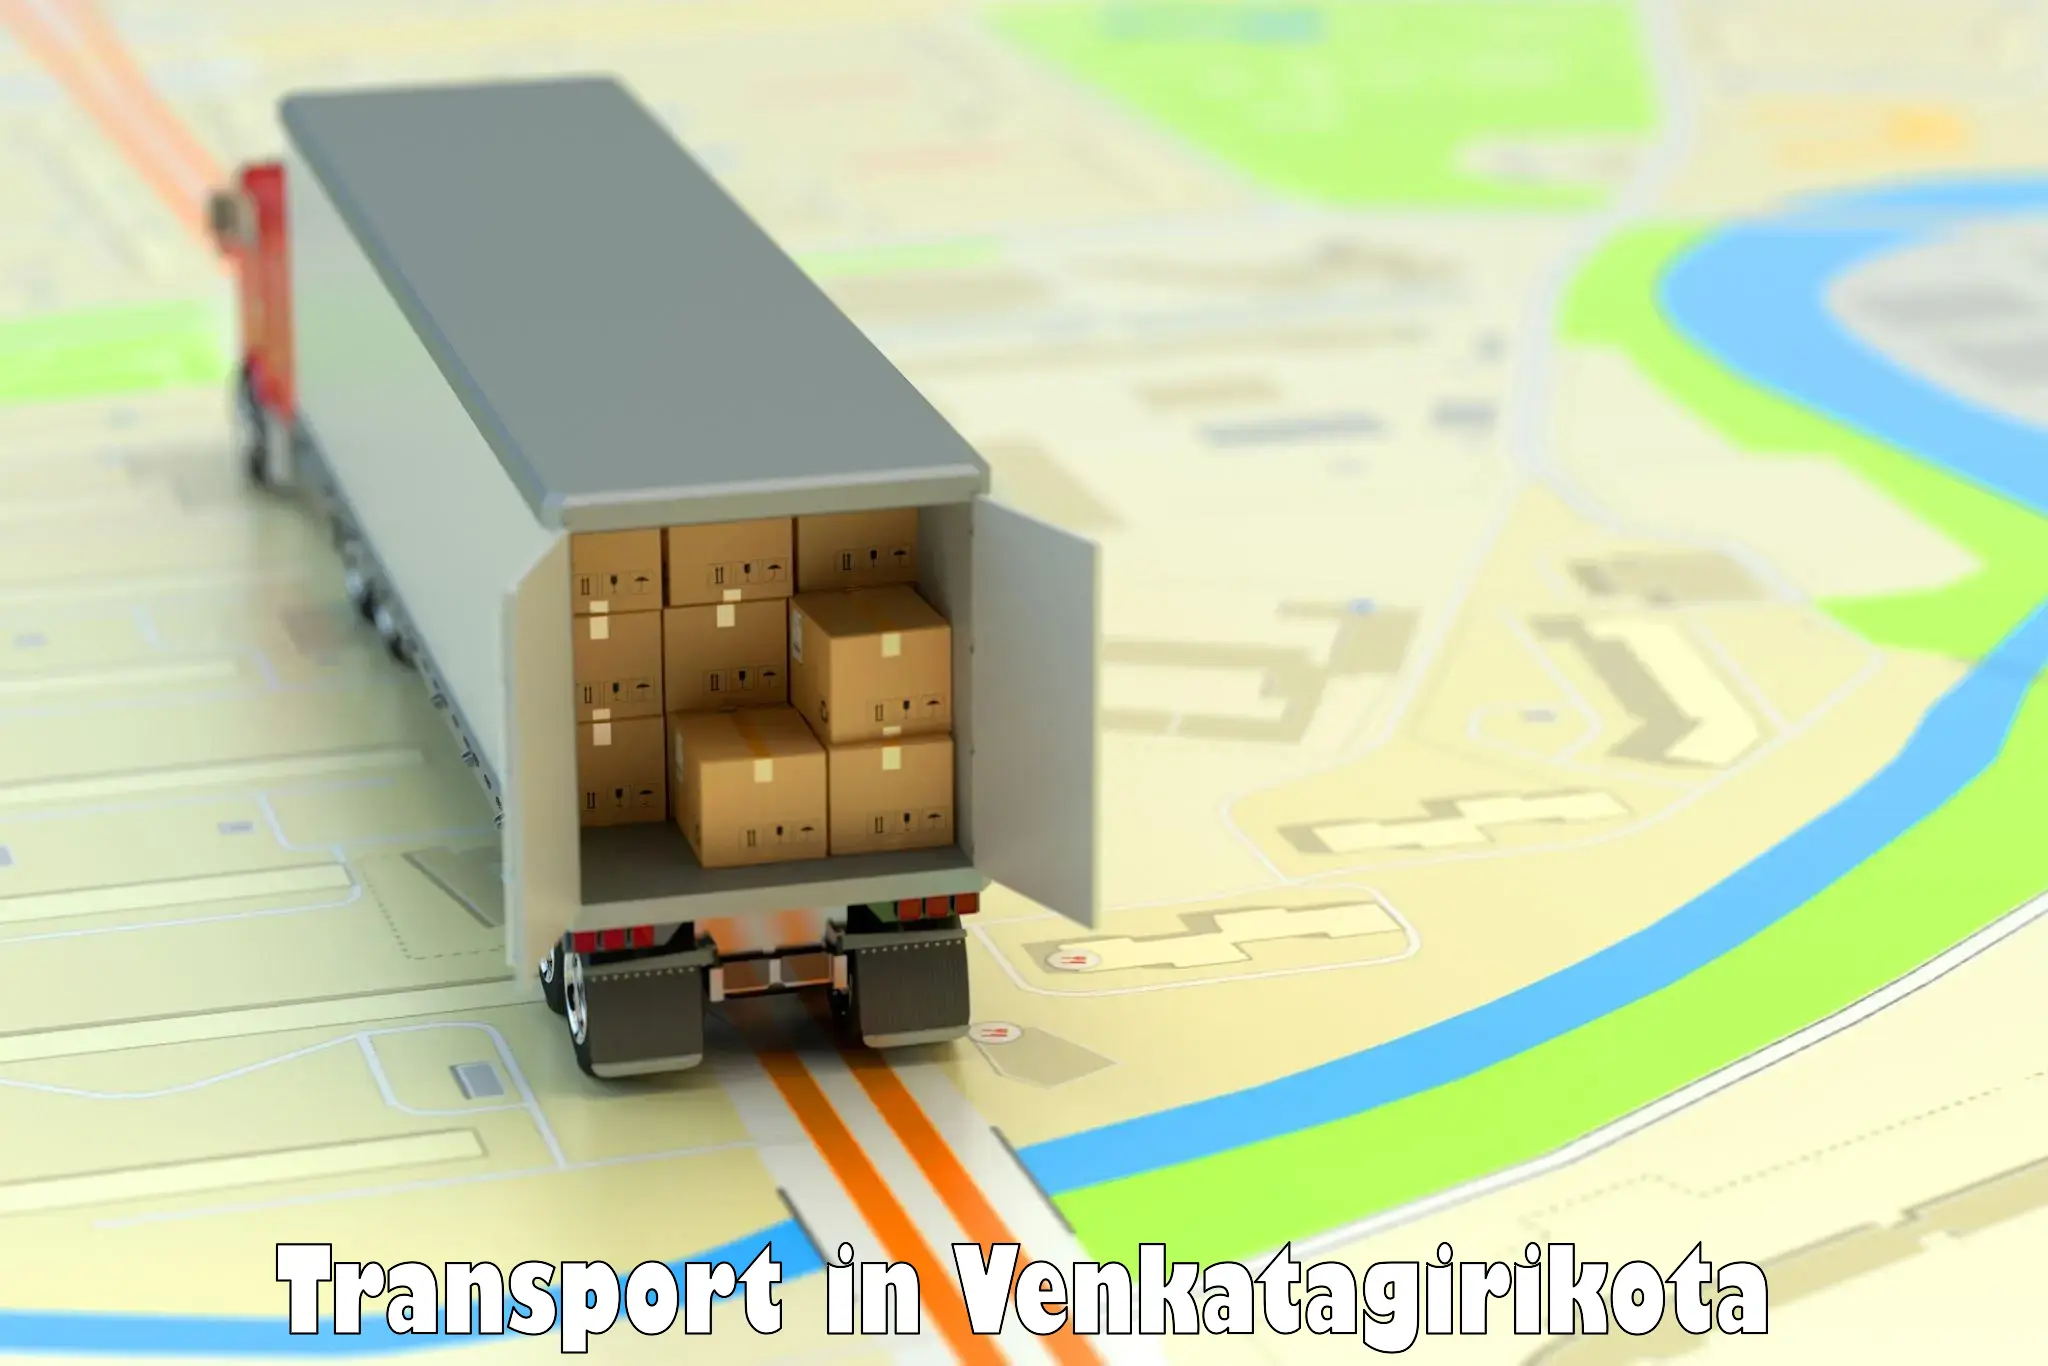 Daily transport service in Venkatagirikota